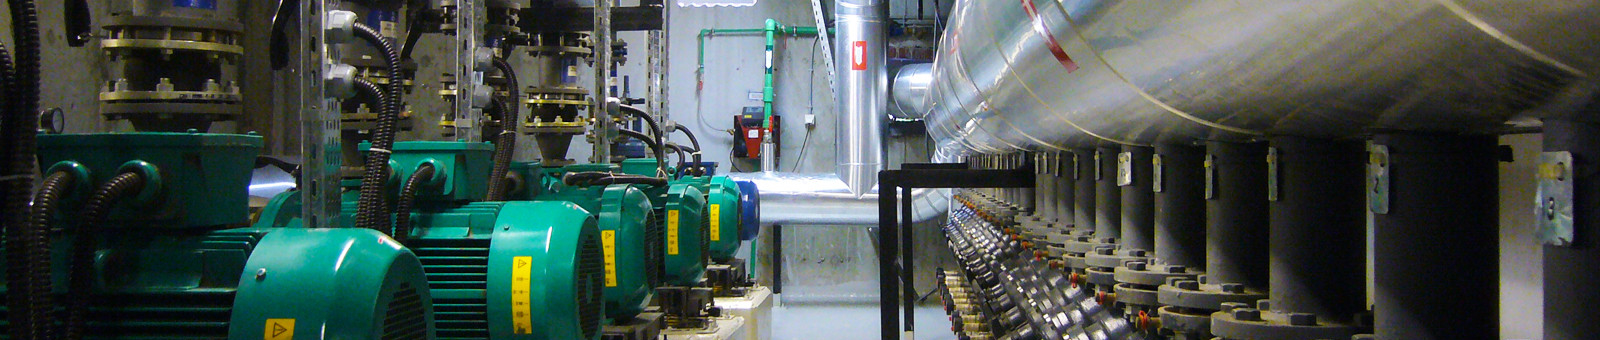 FROnT – Opciones de calefacción y refrigeración renovables RHC a un coste más justo y transparente